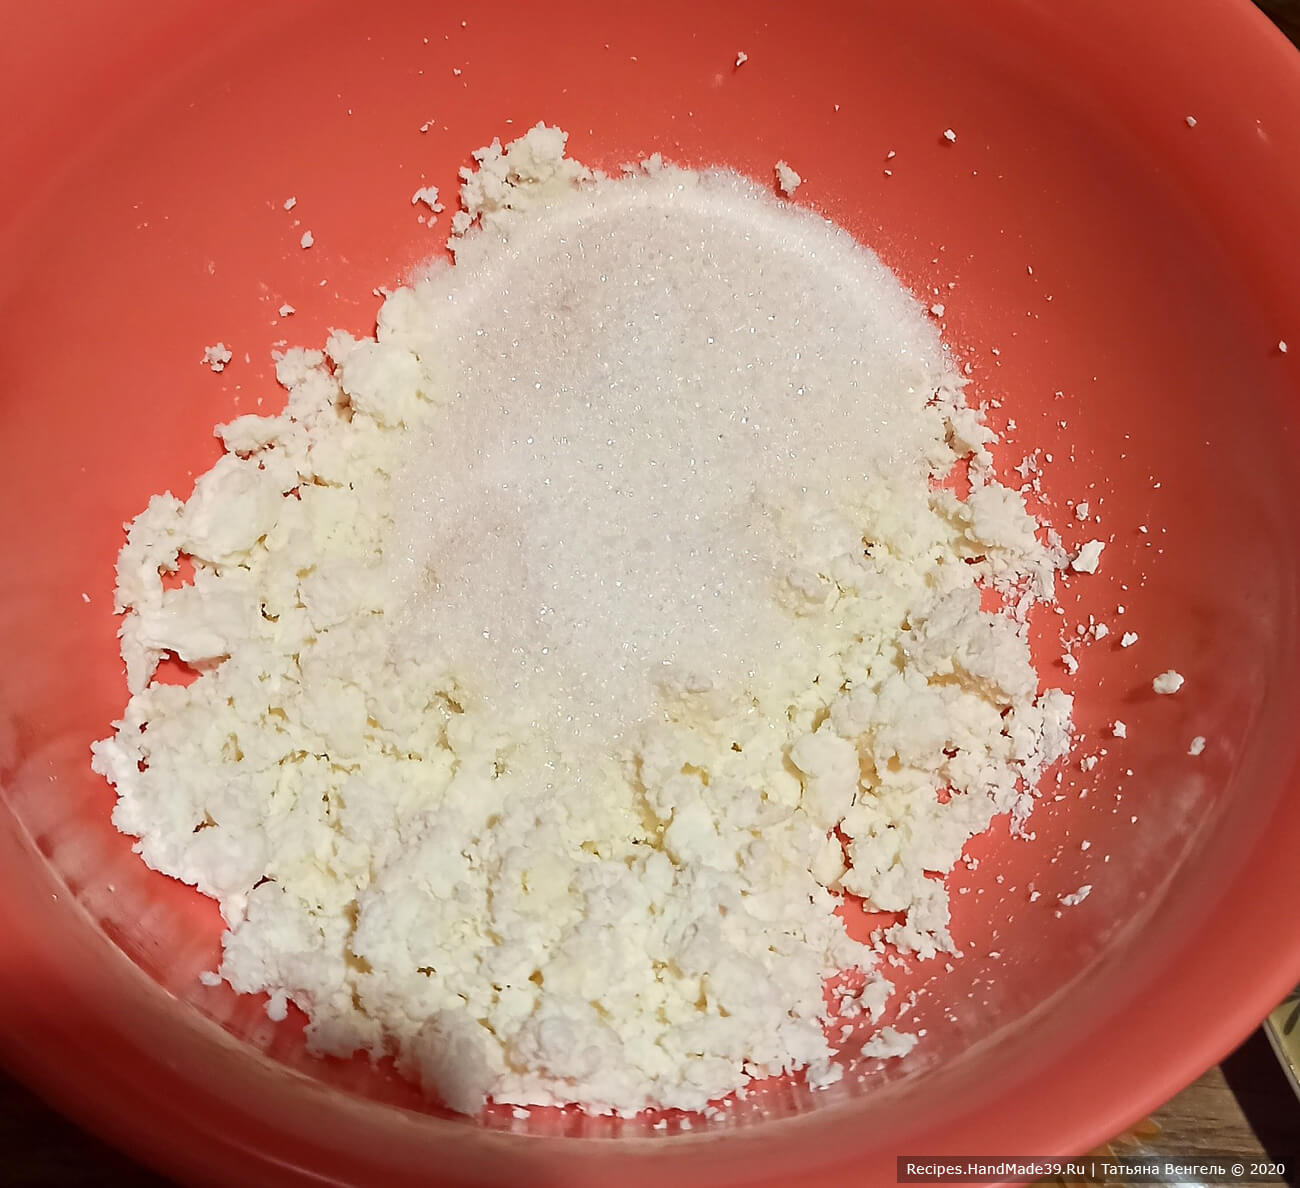 Приготовление творожного теста: смешать творог, соль, сахар, ванильный сахар. Всё размять вилкой